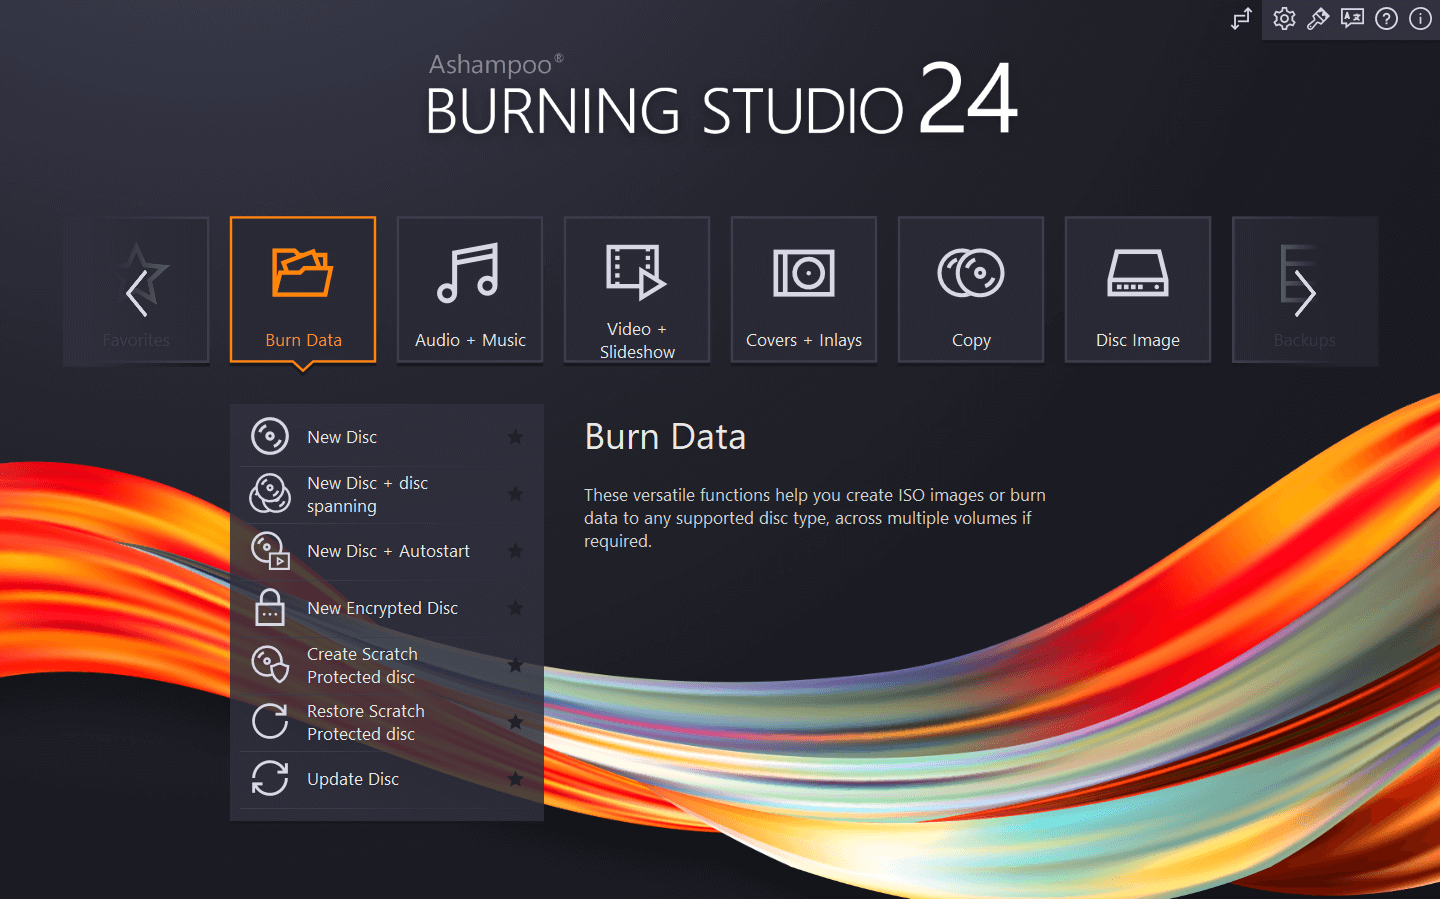 Ashampoo Burning Studio 24 CD Key